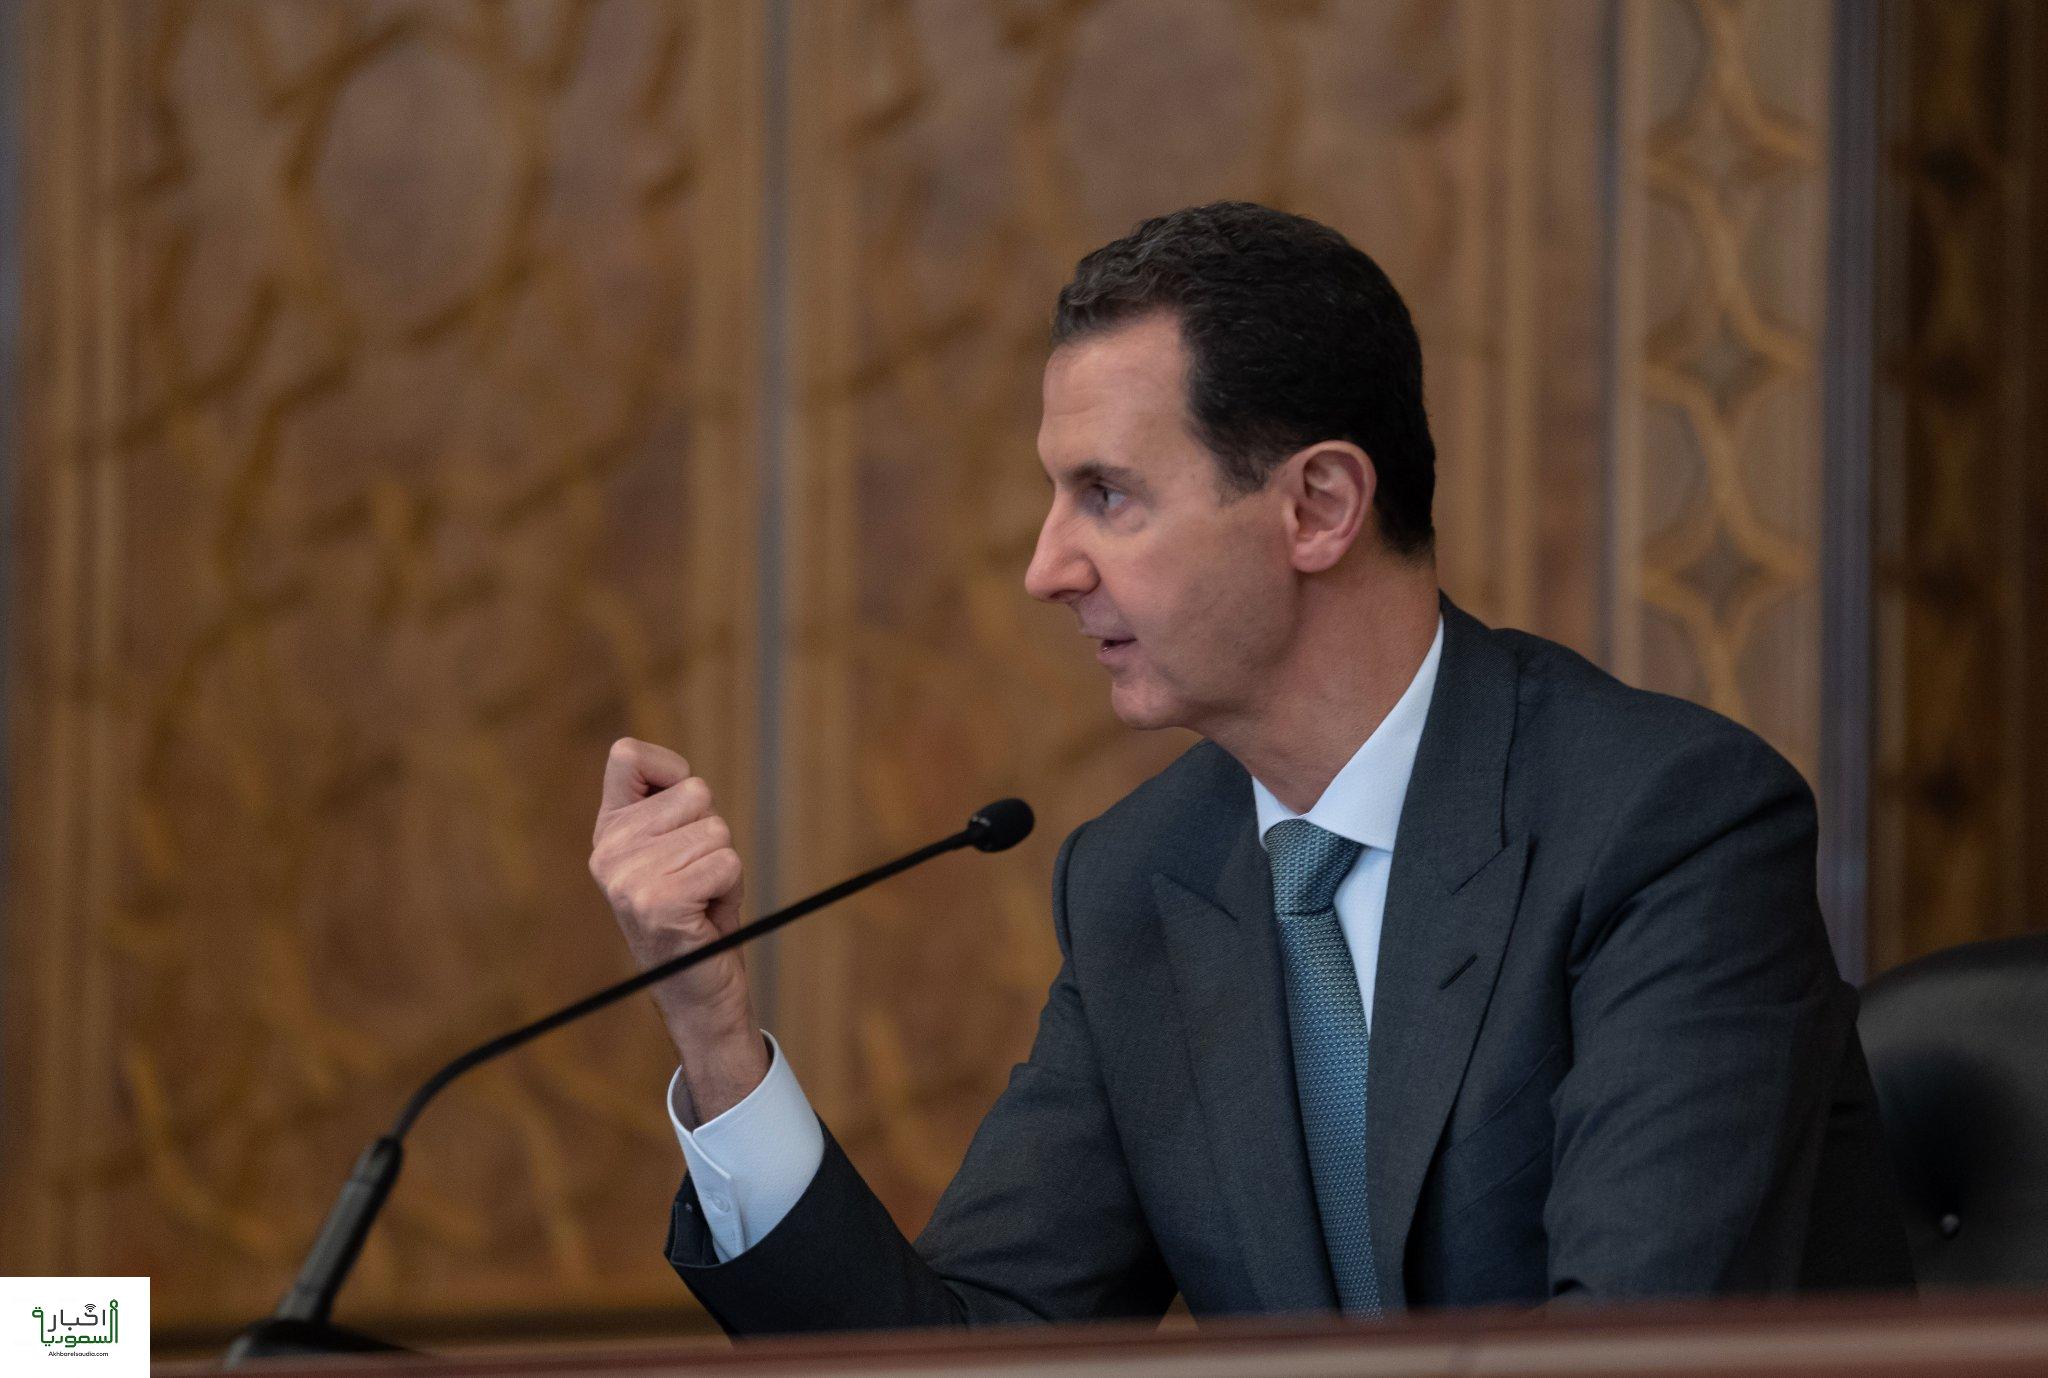 بشار الأسد: اللقاءات مع تركيا يجب أن تكون مبنية على إنهاء وجودها العسكري في البلاد